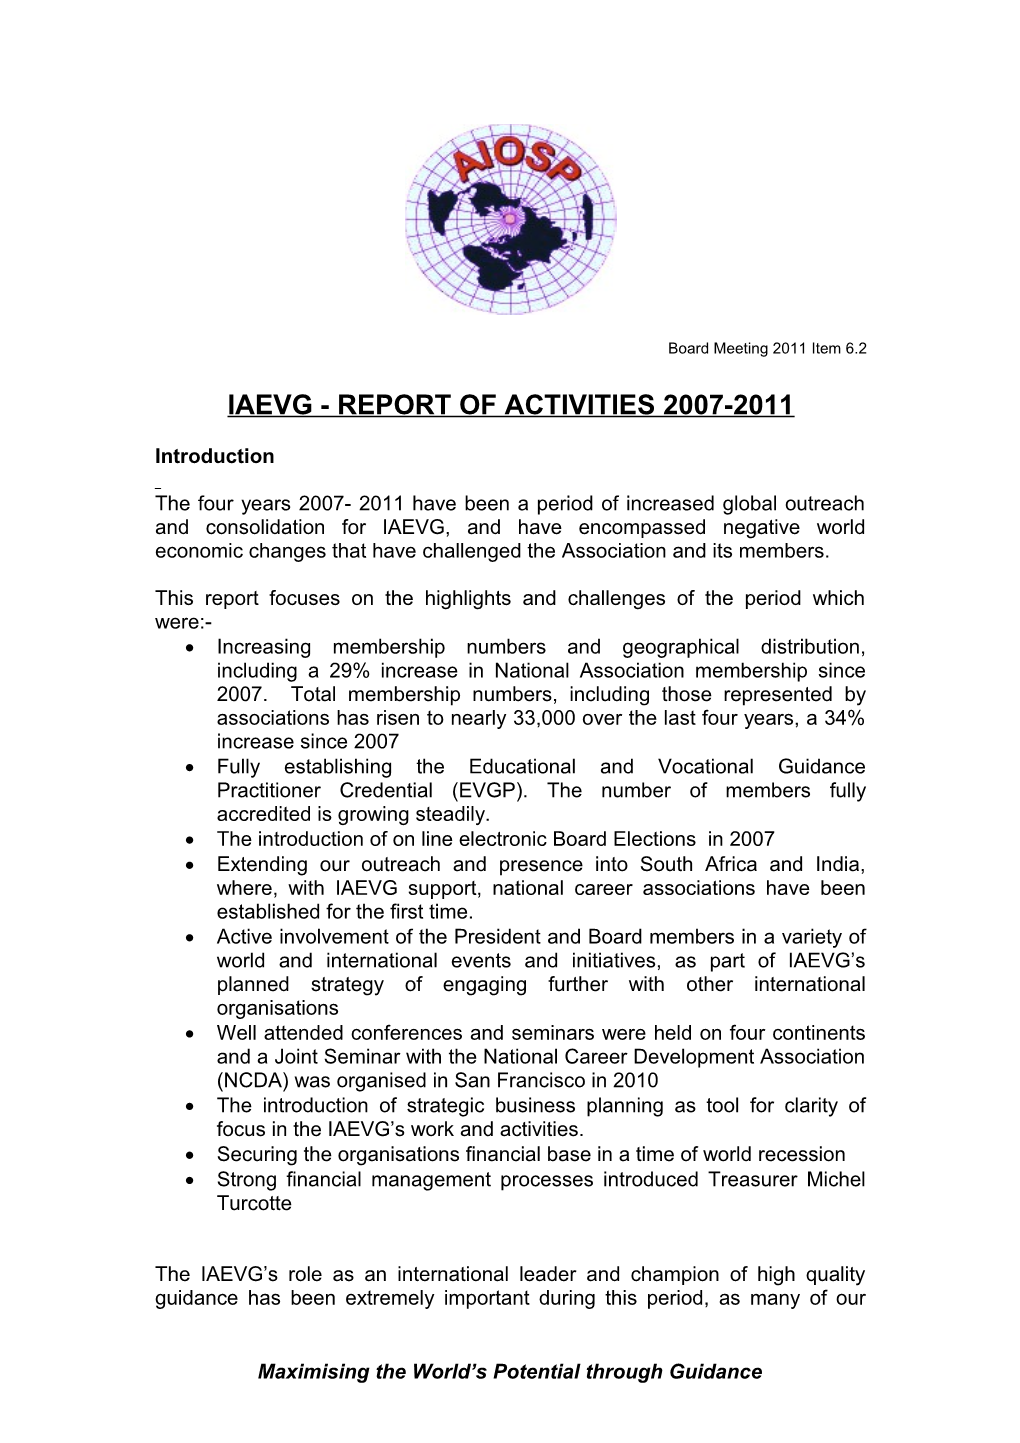 Report of Activities 1999-2002